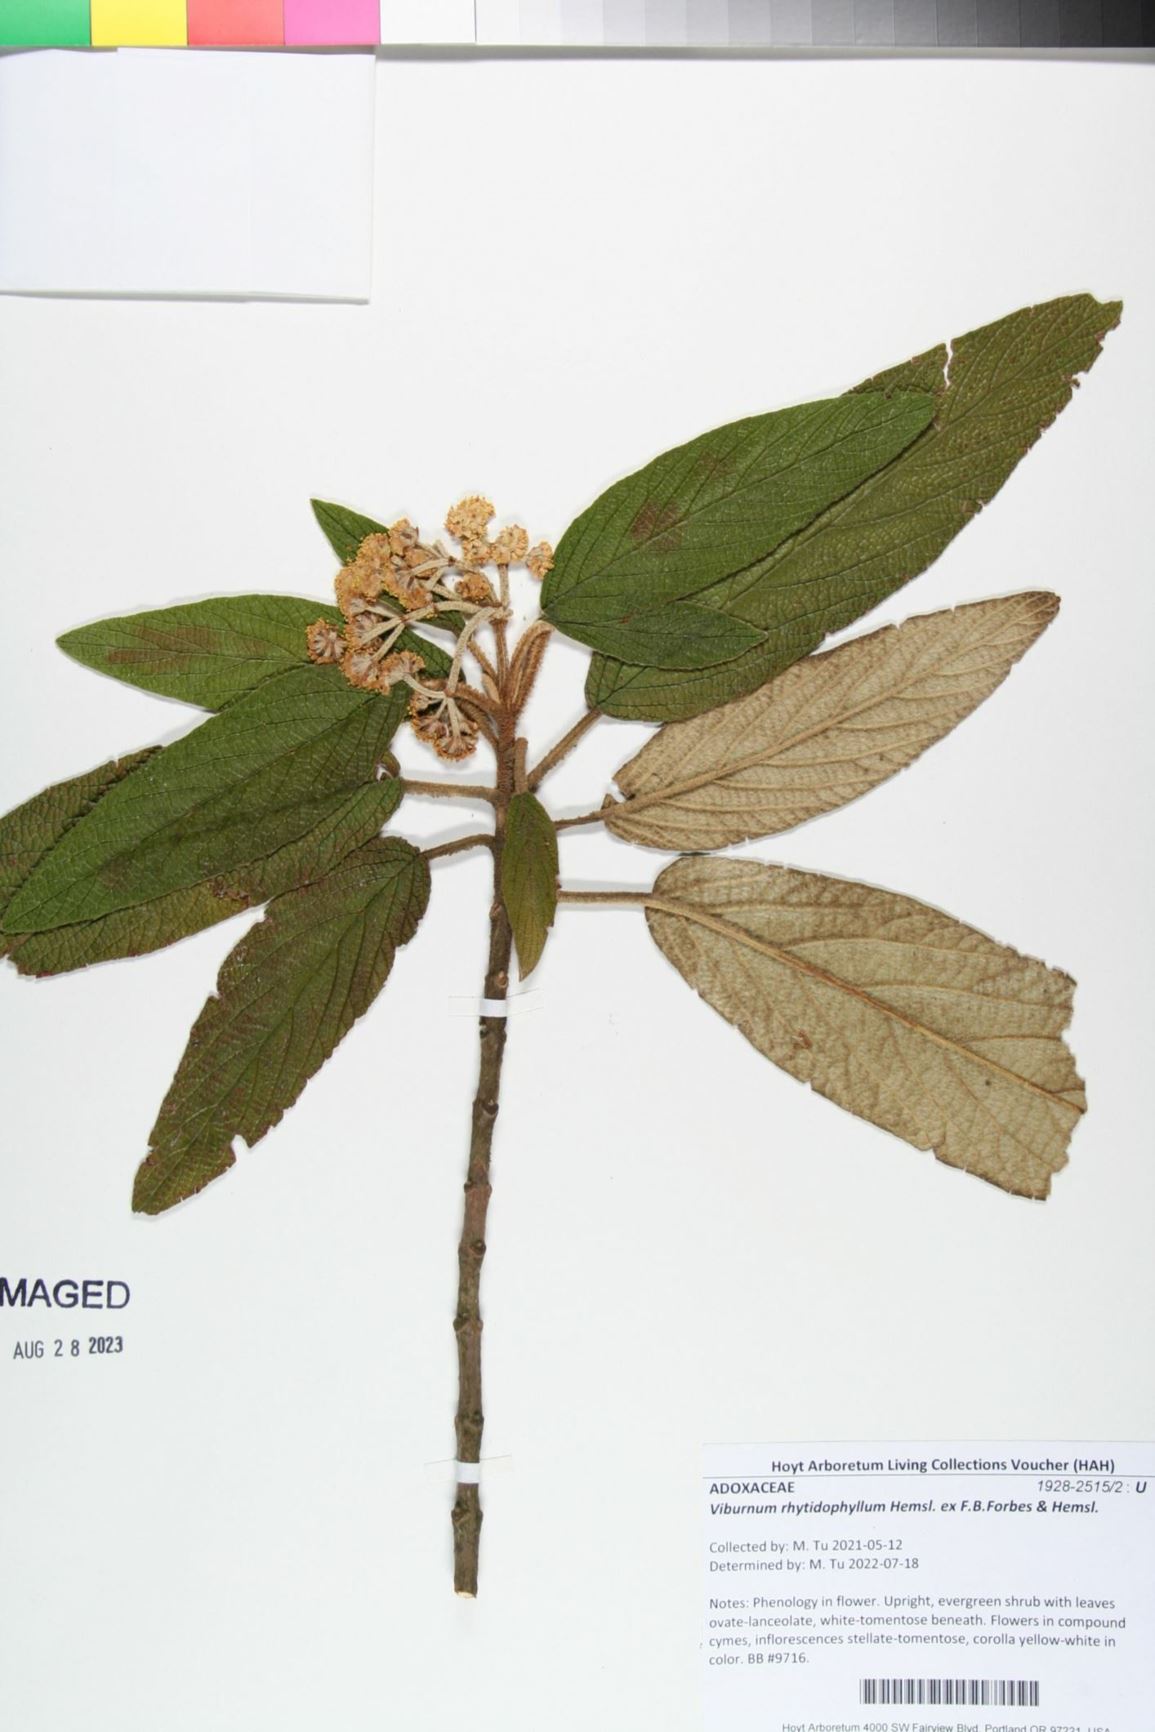 Viburnum rhytidophyllum - Leatherleaf Viburnum,  leatherleaf arrowwood